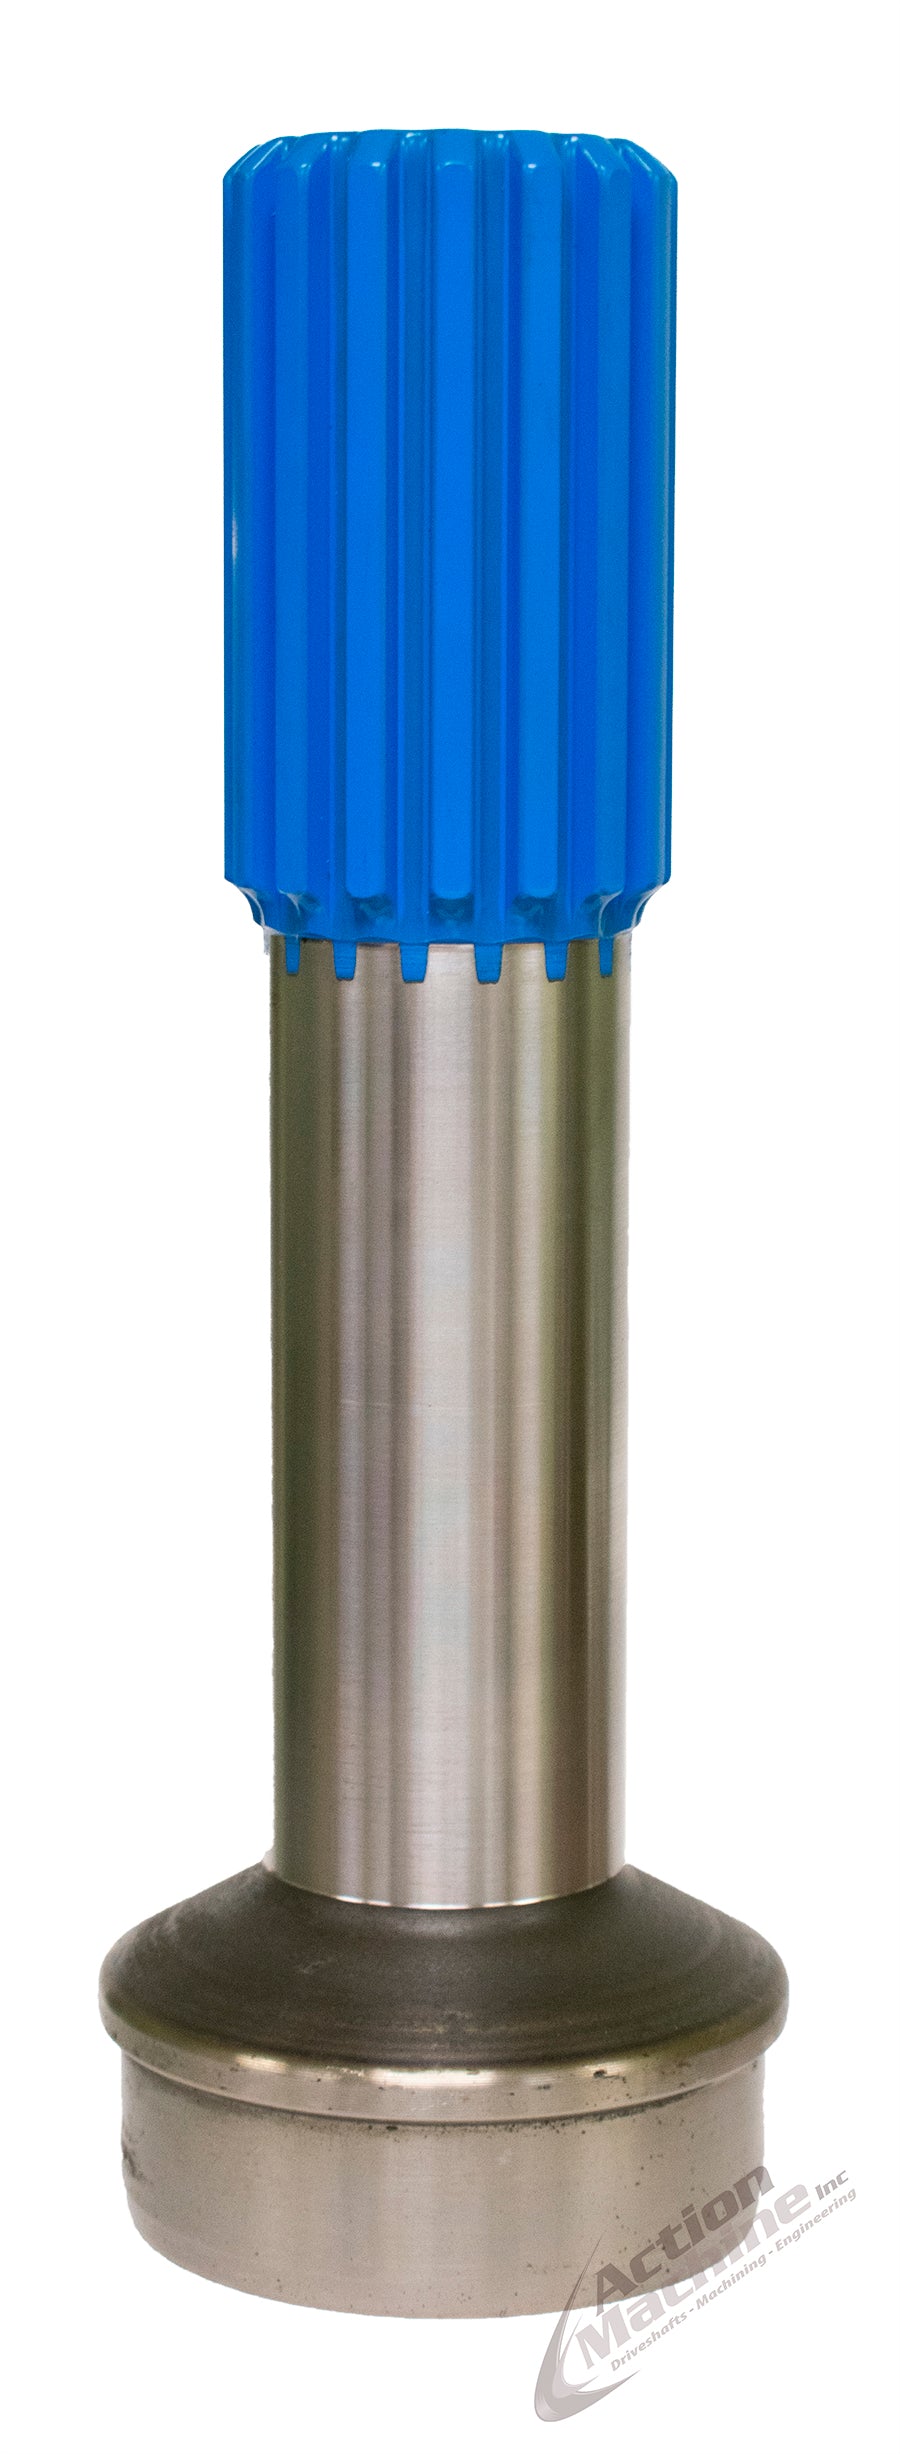 AMI 6-40-521 Tube Shaft